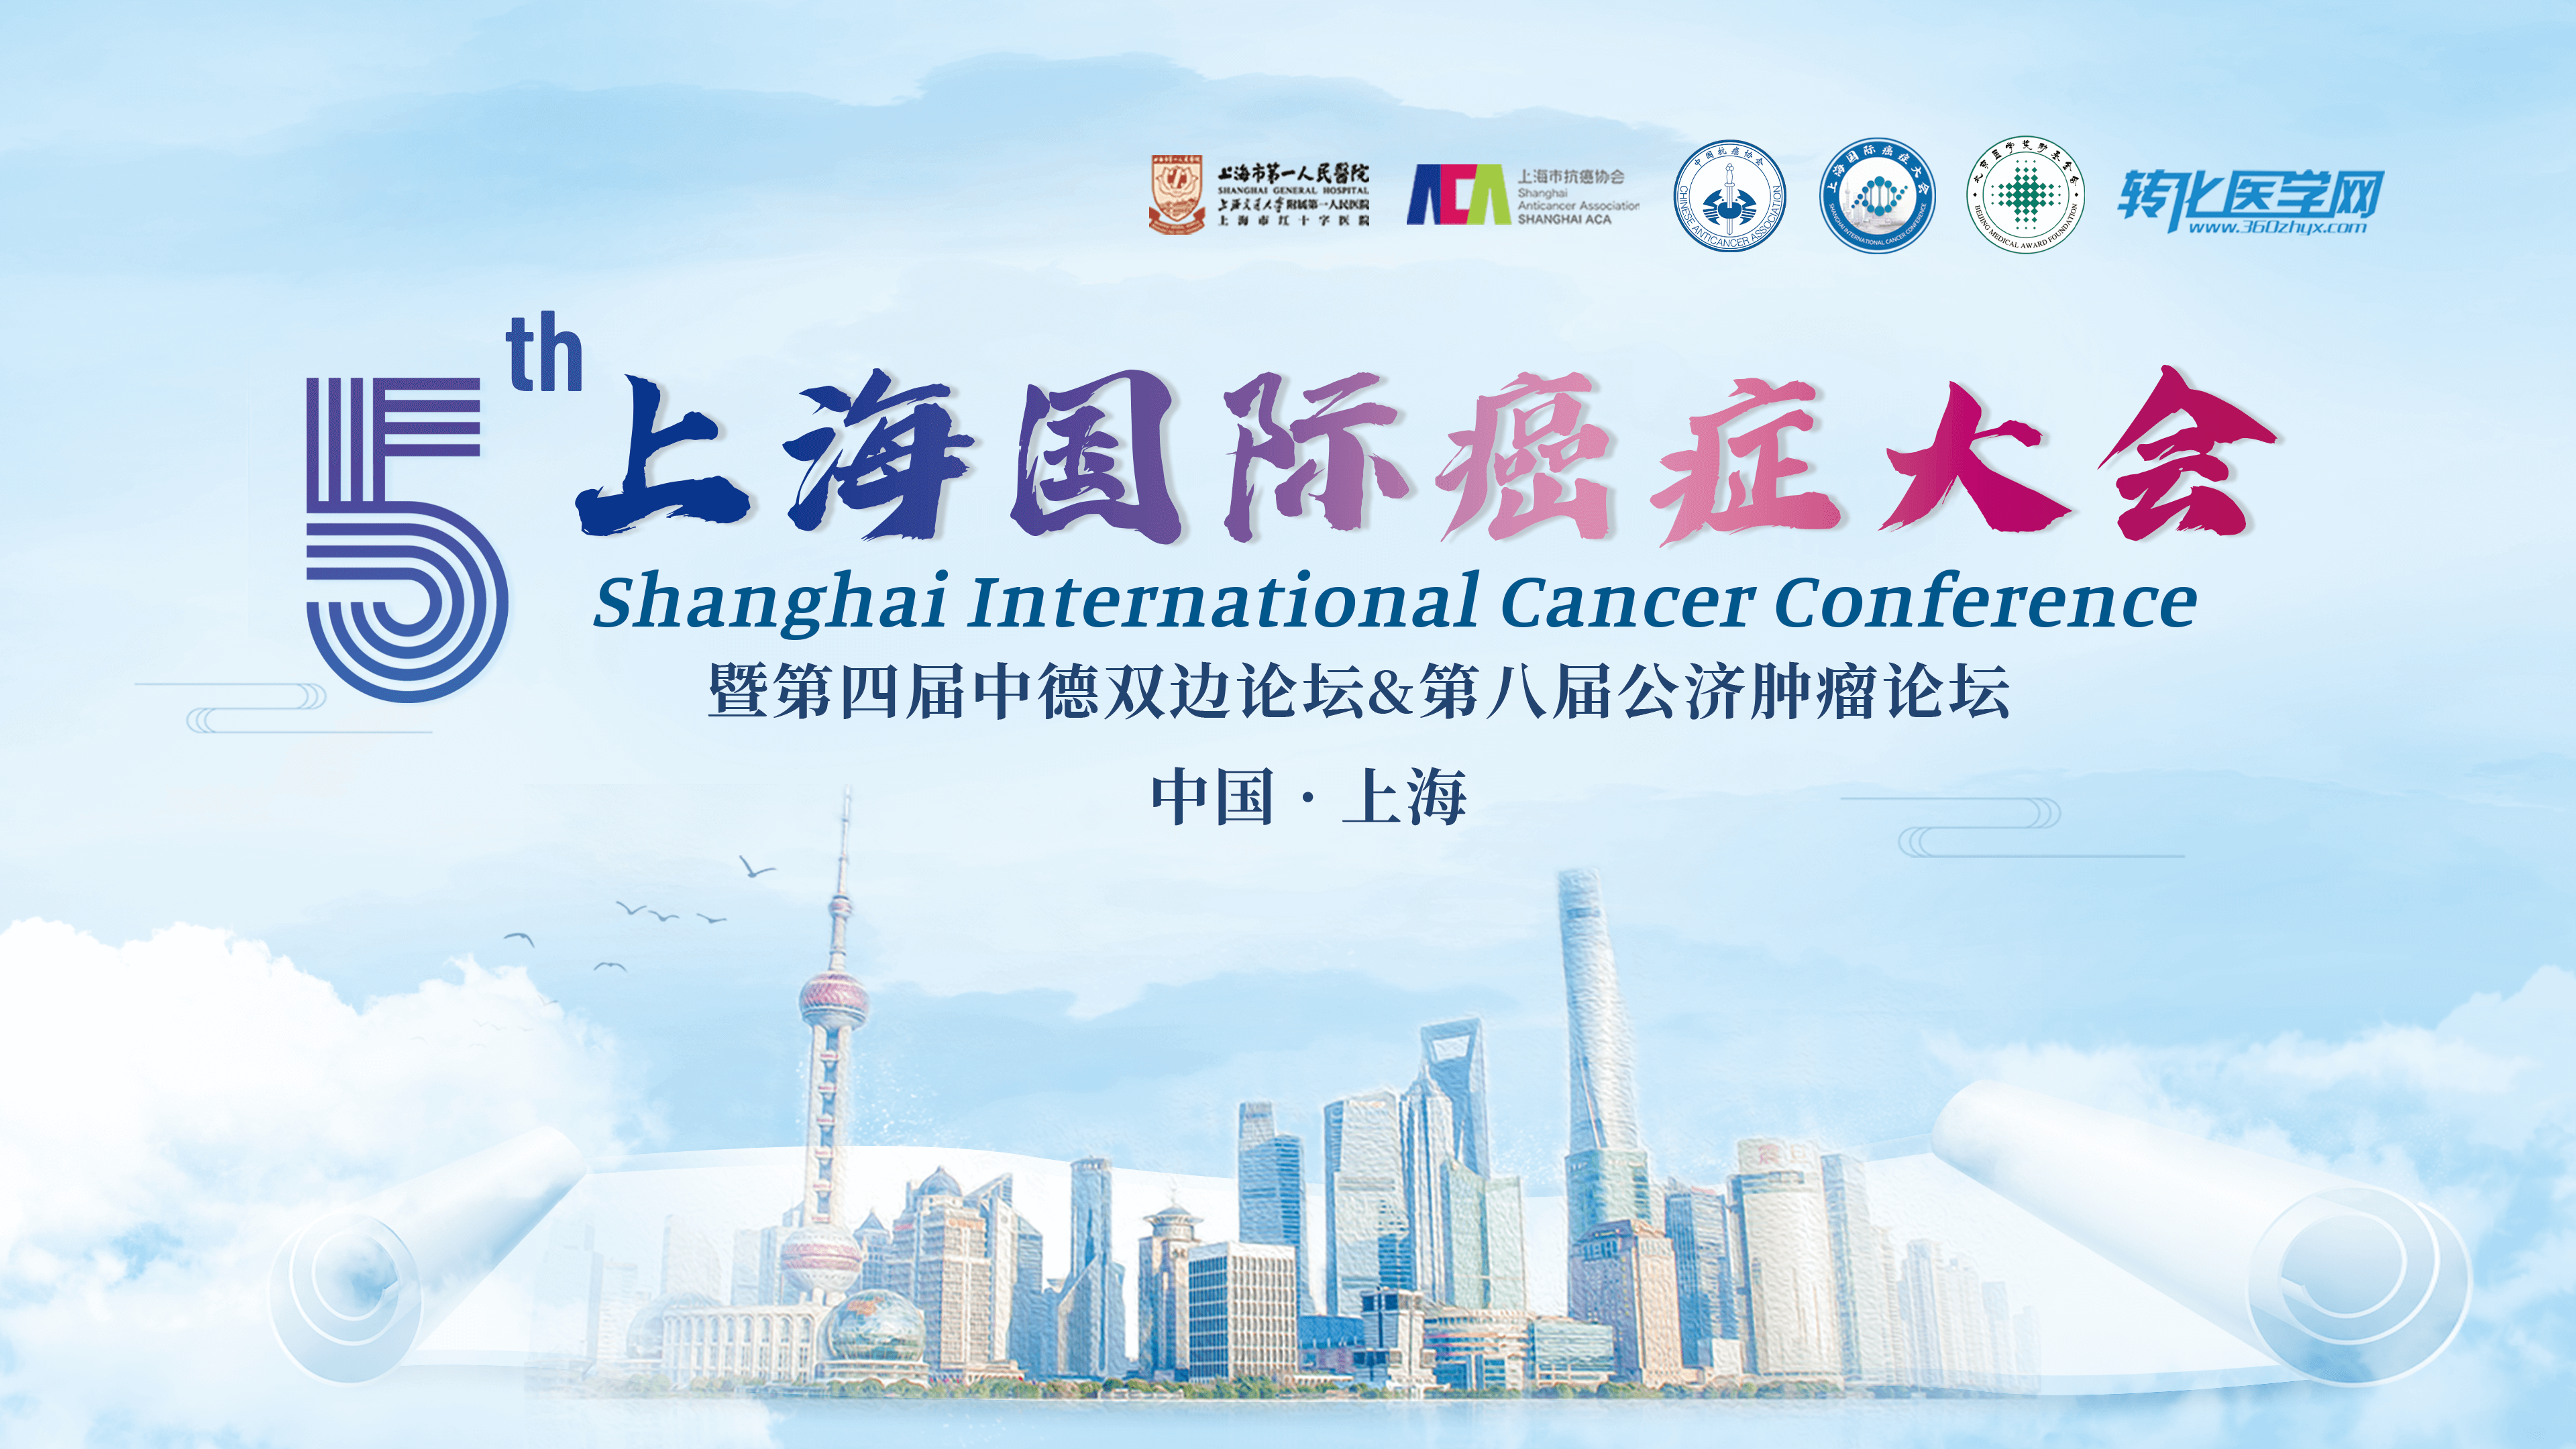 会议通知 | 森西赛智邀您共赴第五届上海国际癌症大会